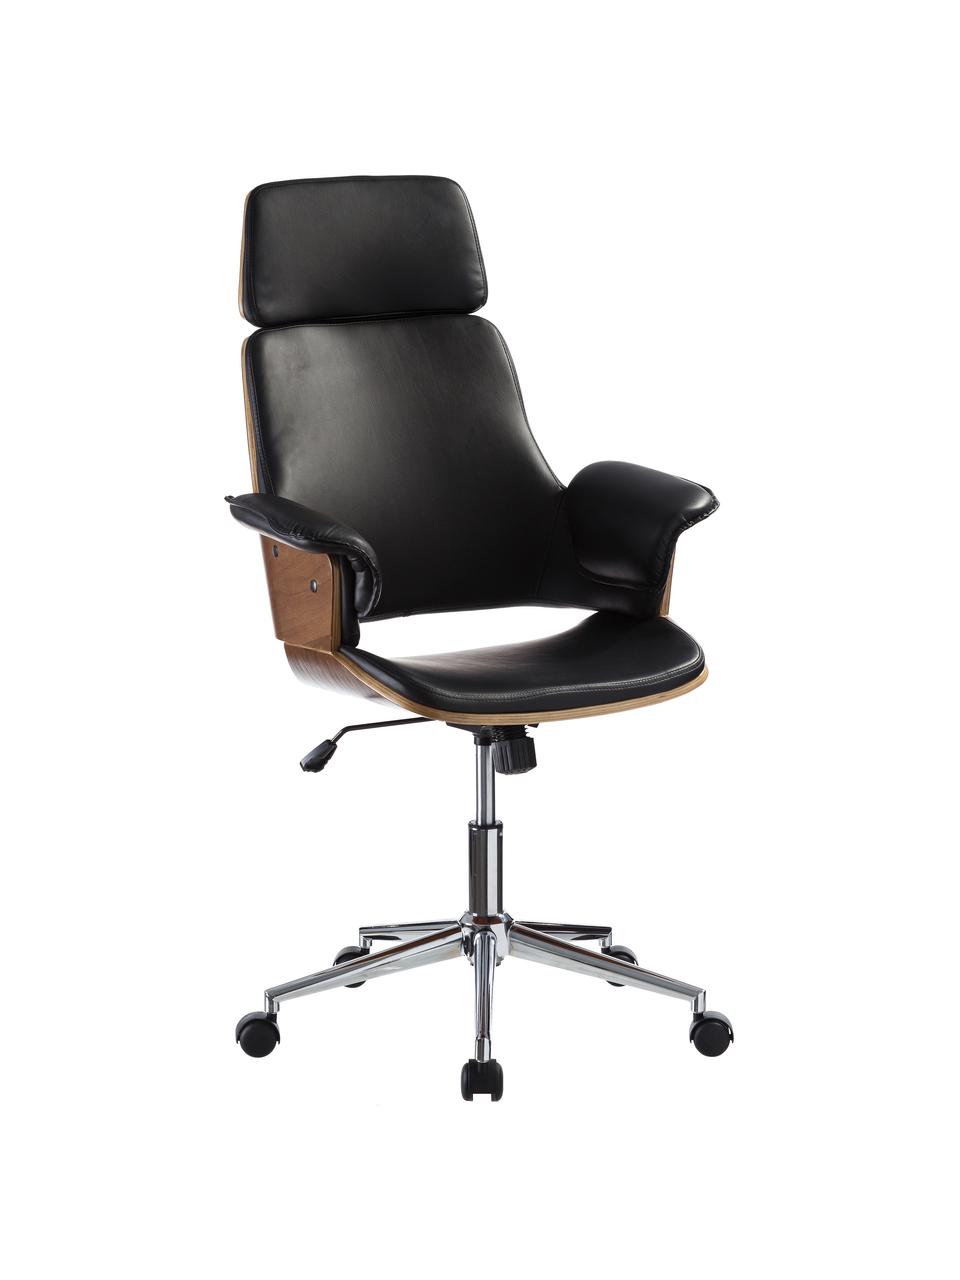 Krzesło biurowe ze sztucznej skóry Marbella, obrotowe, Tapicerka: sztuczna skóra, Nogi: stal szlachetna, Czarny, S 68 x G 64 cm